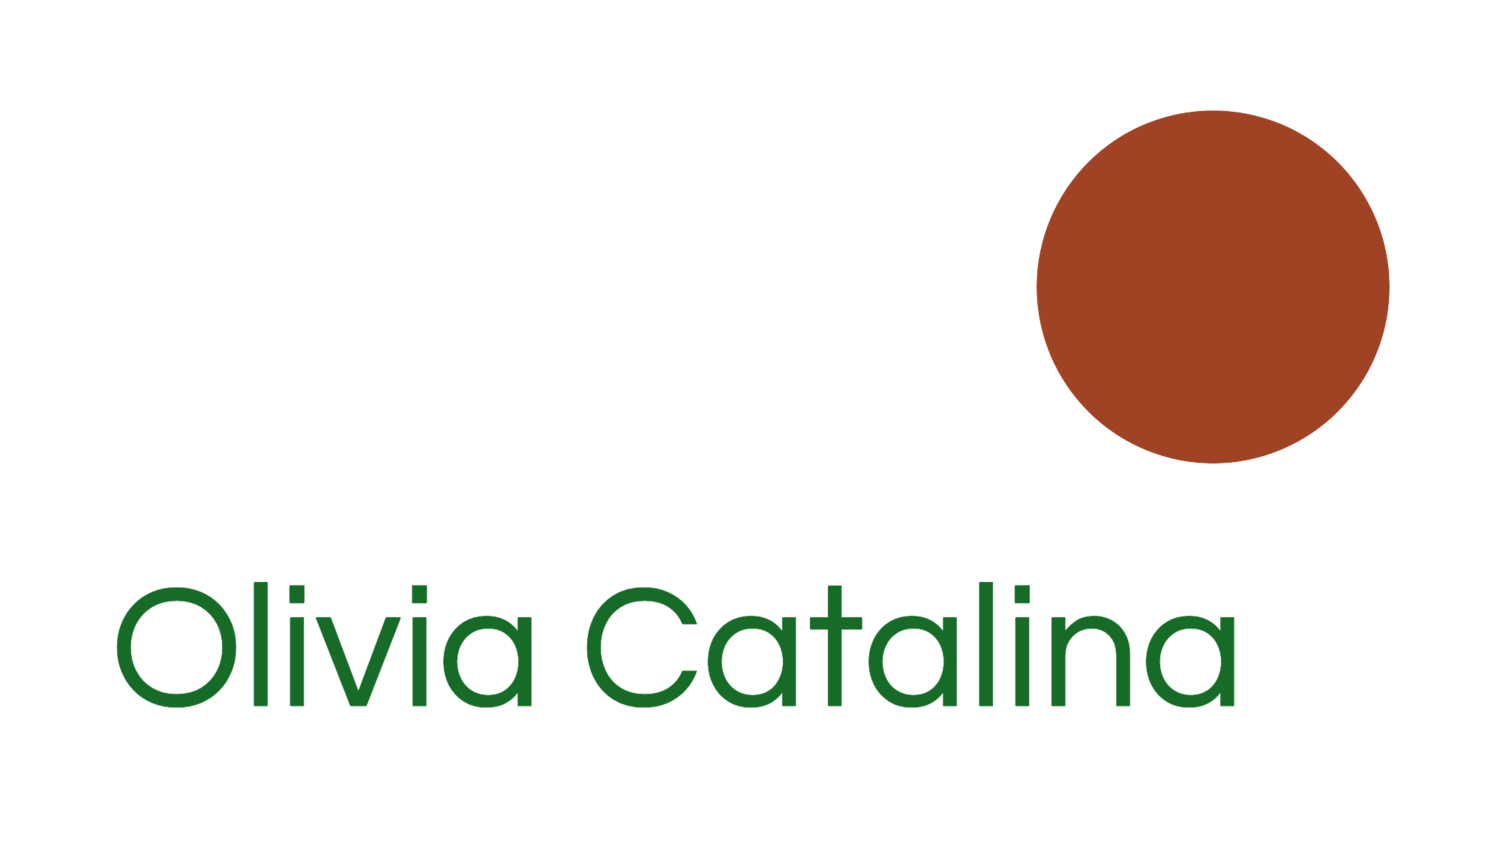 Olivia Catalina